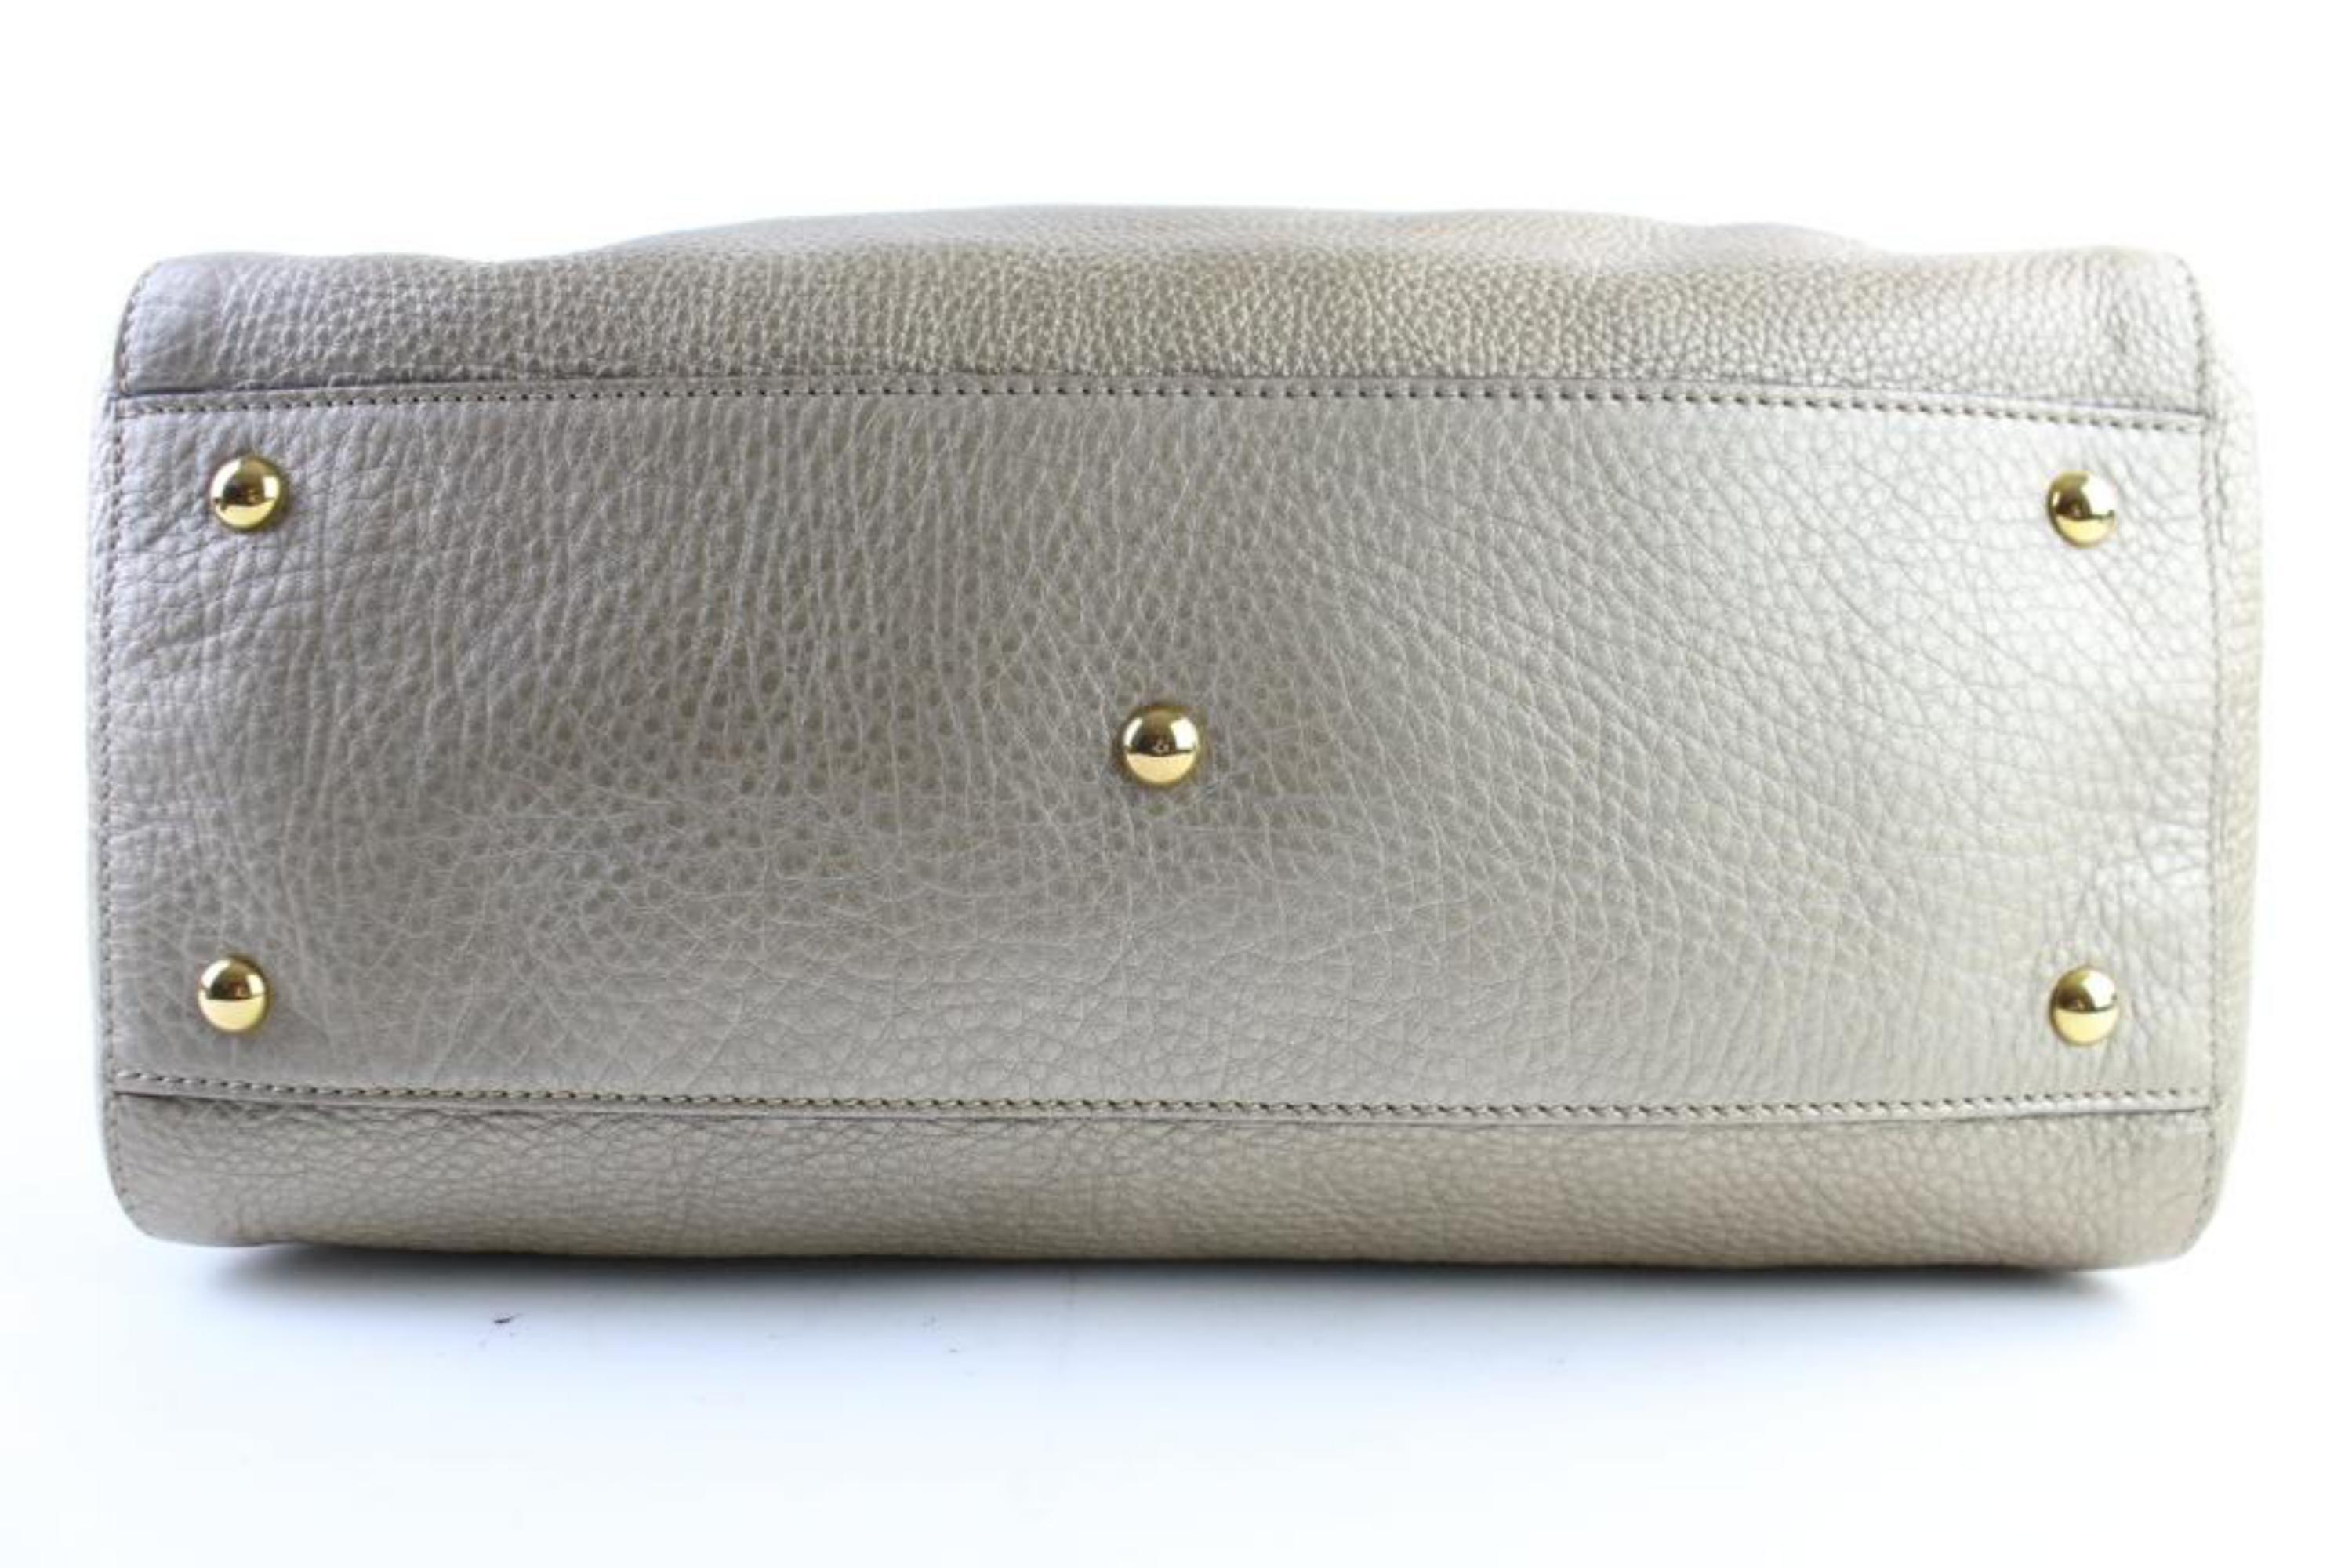 Gucci Soho Gradient Fringe Tote 226621 Bronze Leather Shoulder Bag For Sale 5